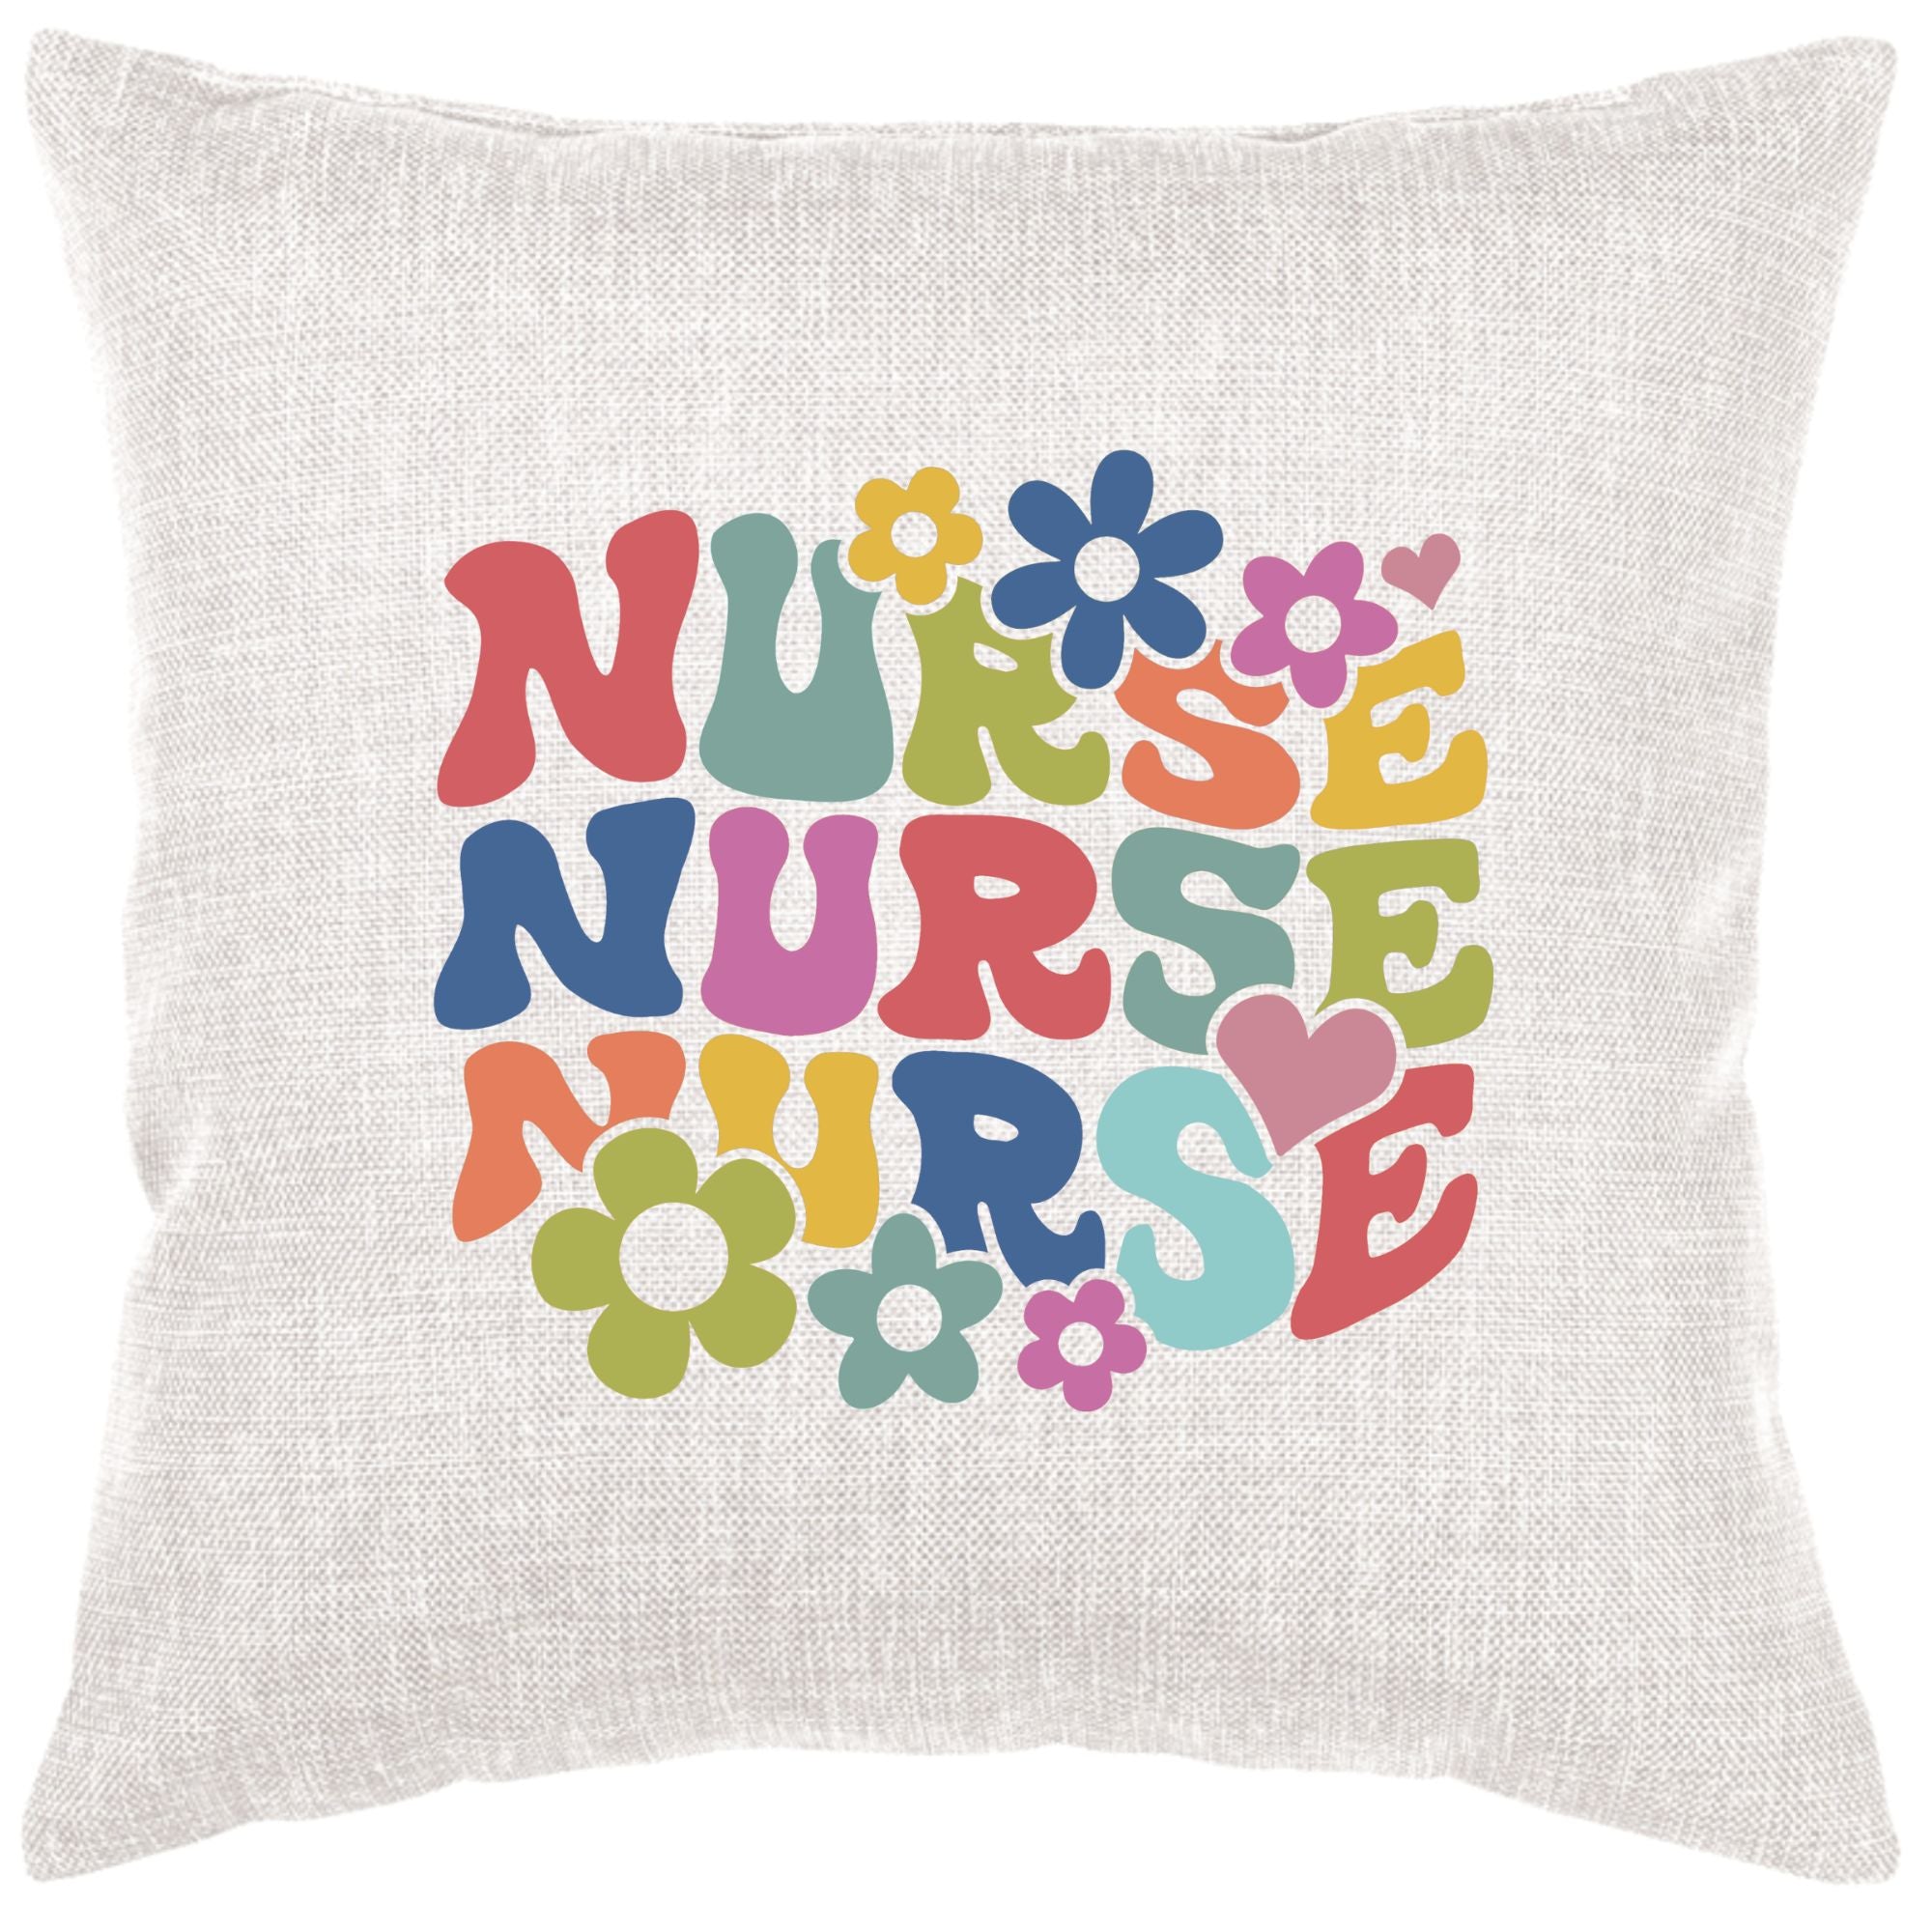 Retro Nurse Down Pillow